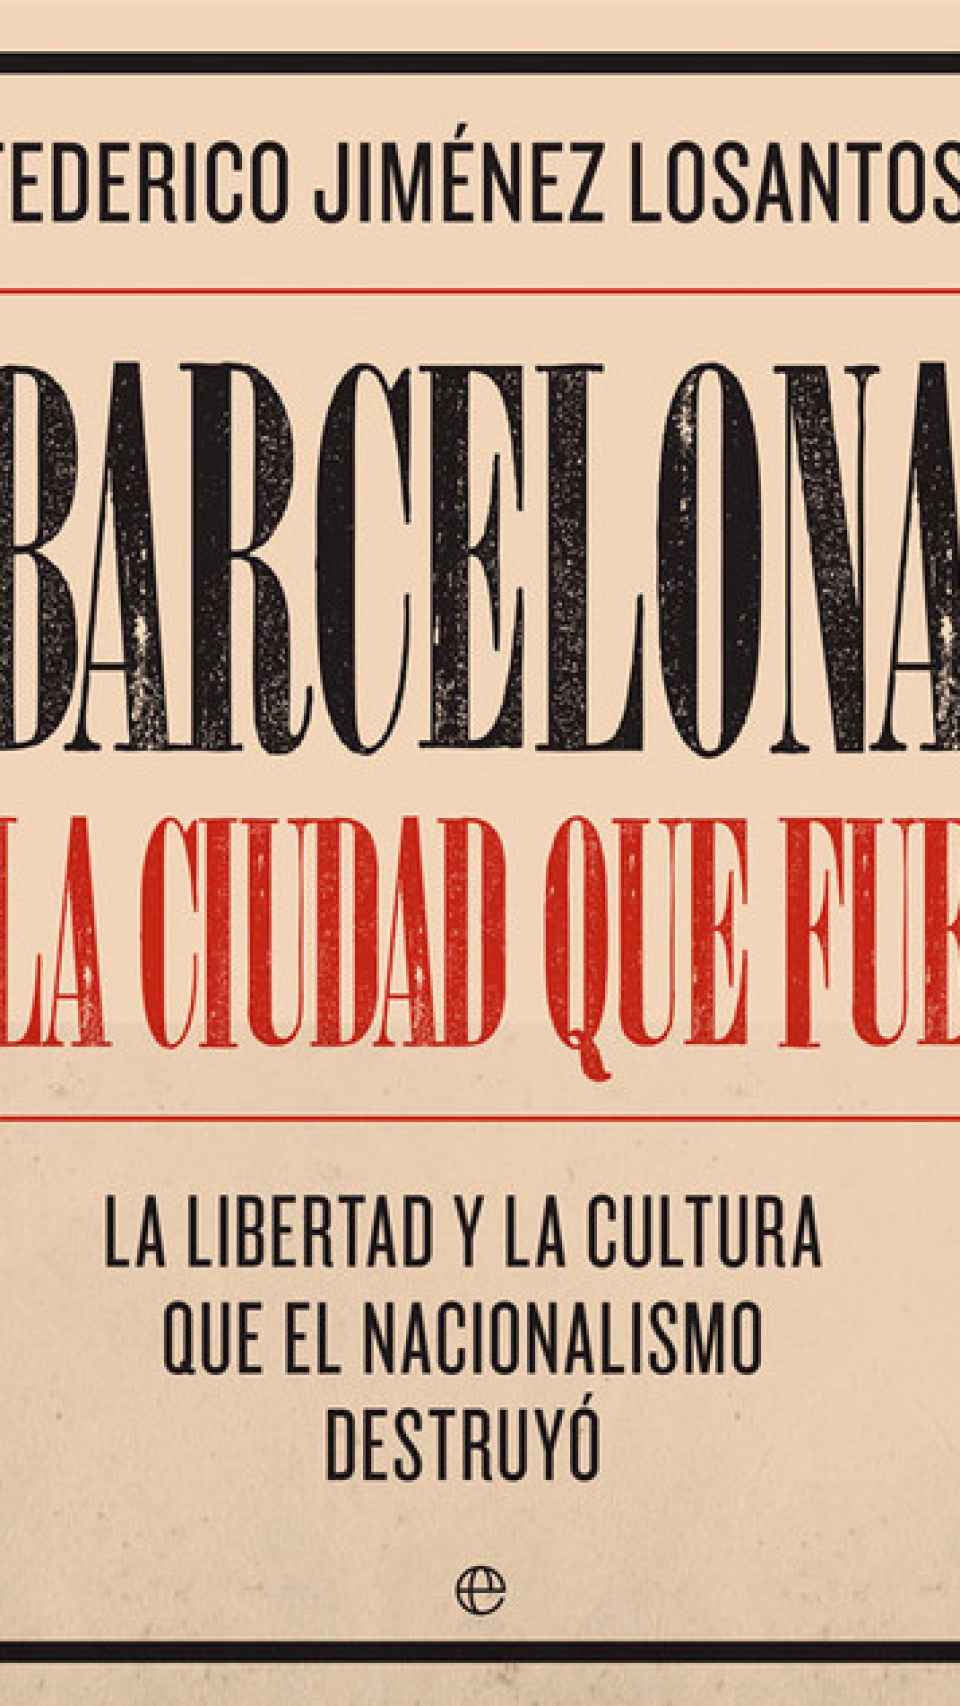 Barcelona, la ciudad que fue. La libertad y la cultura que el nacionalismo destruyó